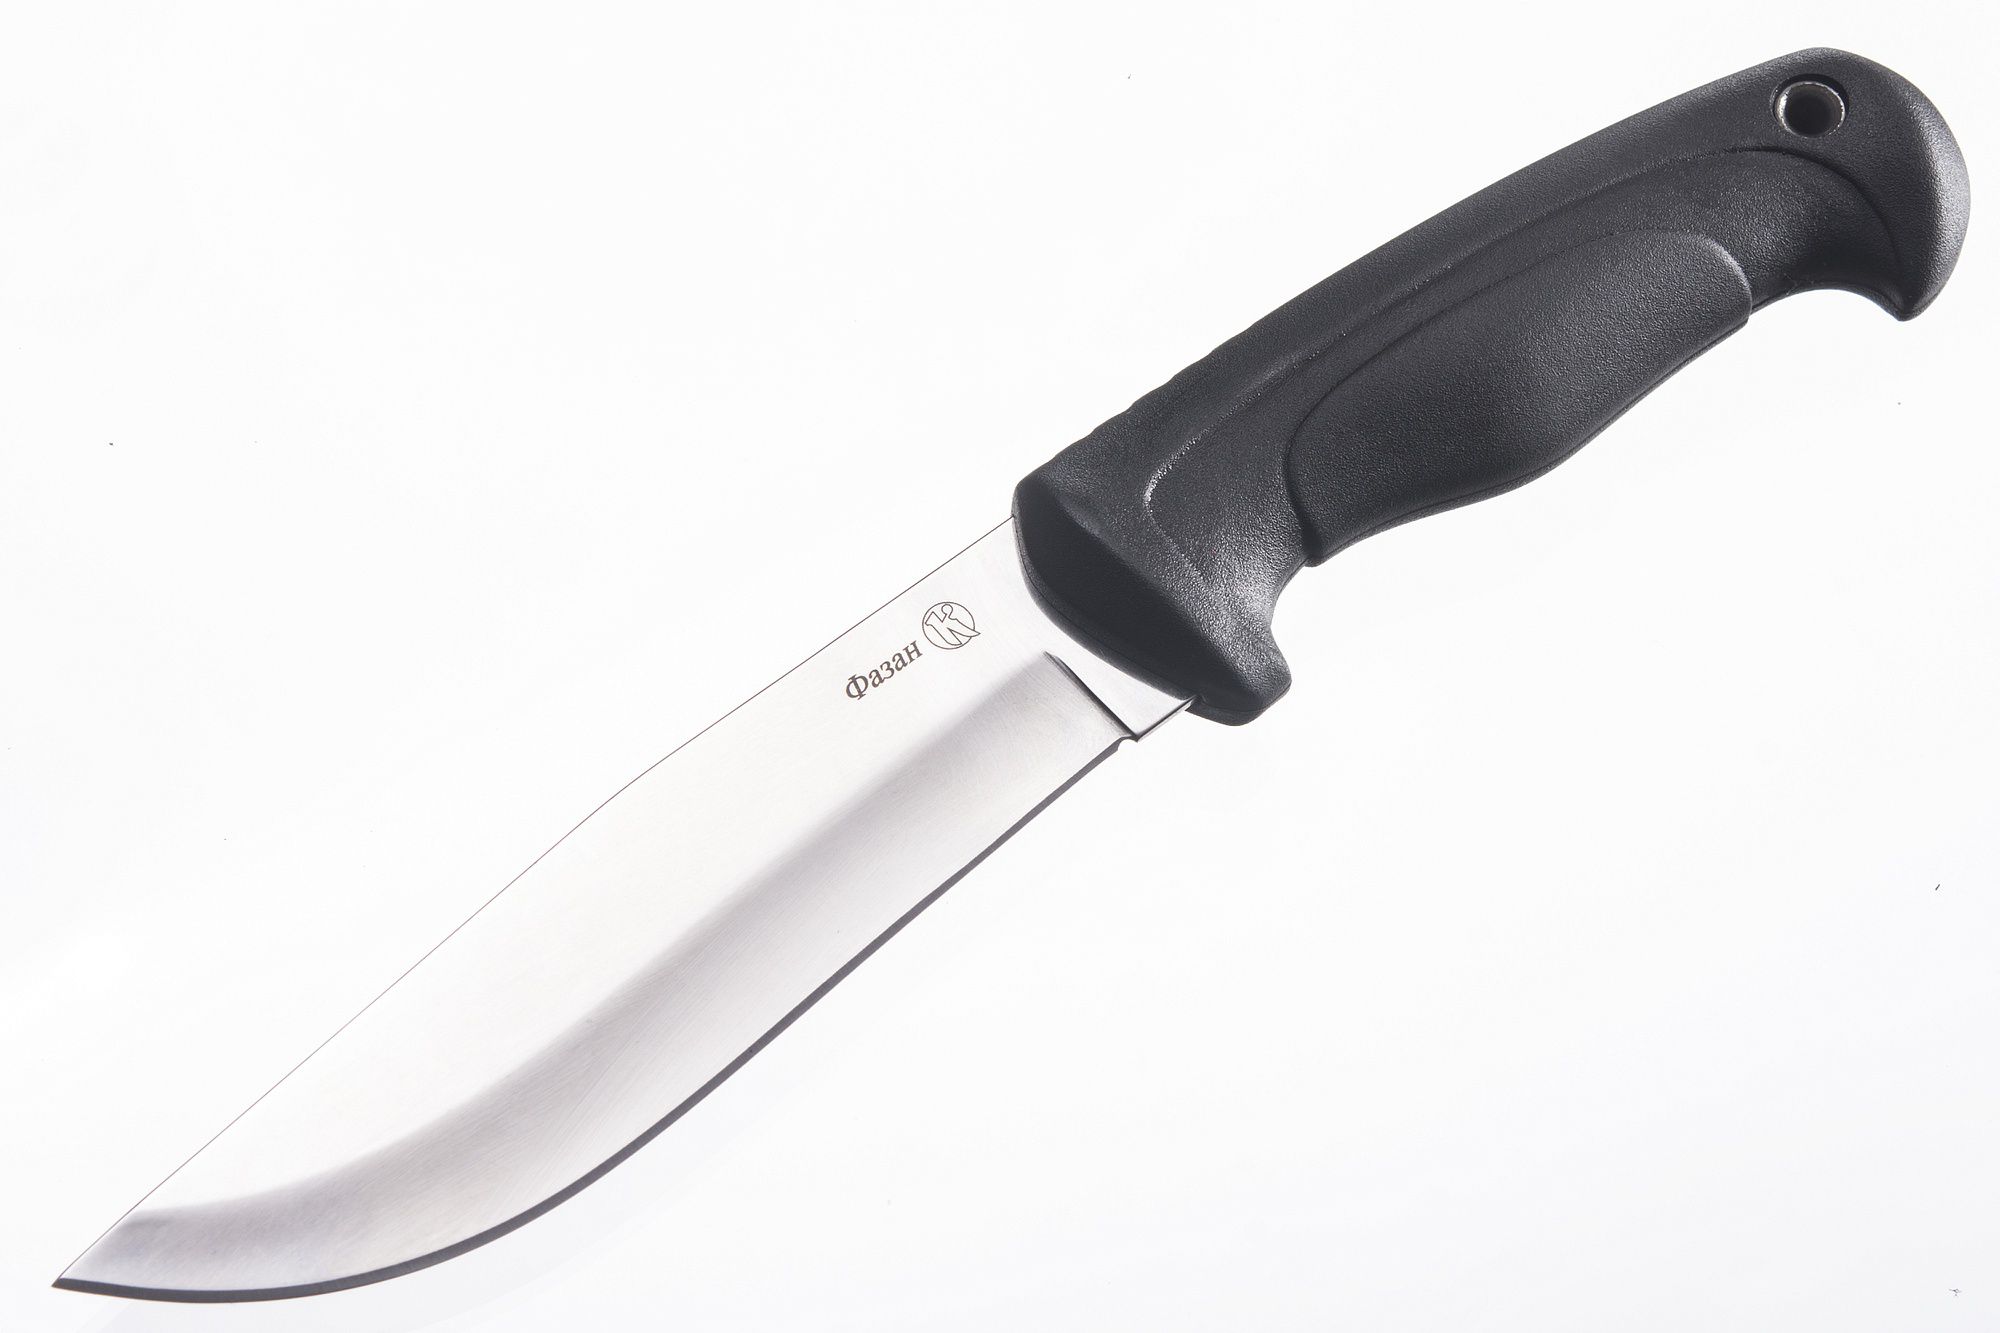 Нож Фазан AUS-8, клинок-полировка, рукоять-эластрон, ножны-кожа (011301) (ПП)